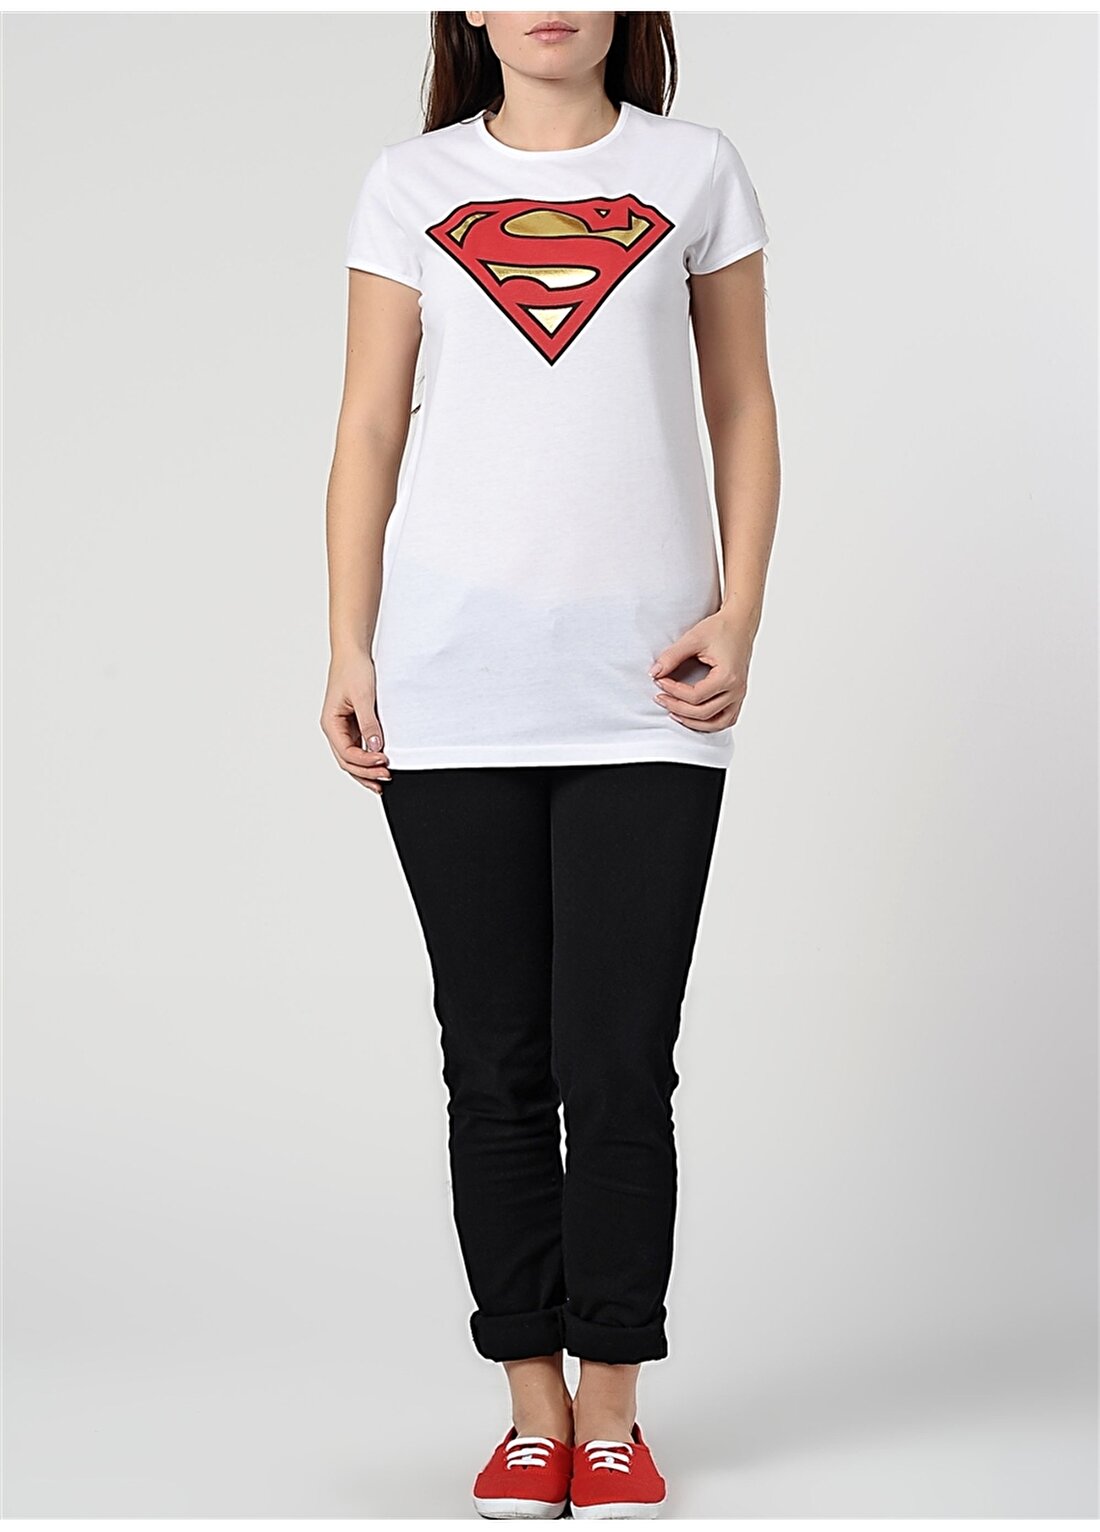 Supergirl Bisiklet Yaka Kısa Kol Baskılı Beyaz Genç Kız Tişört